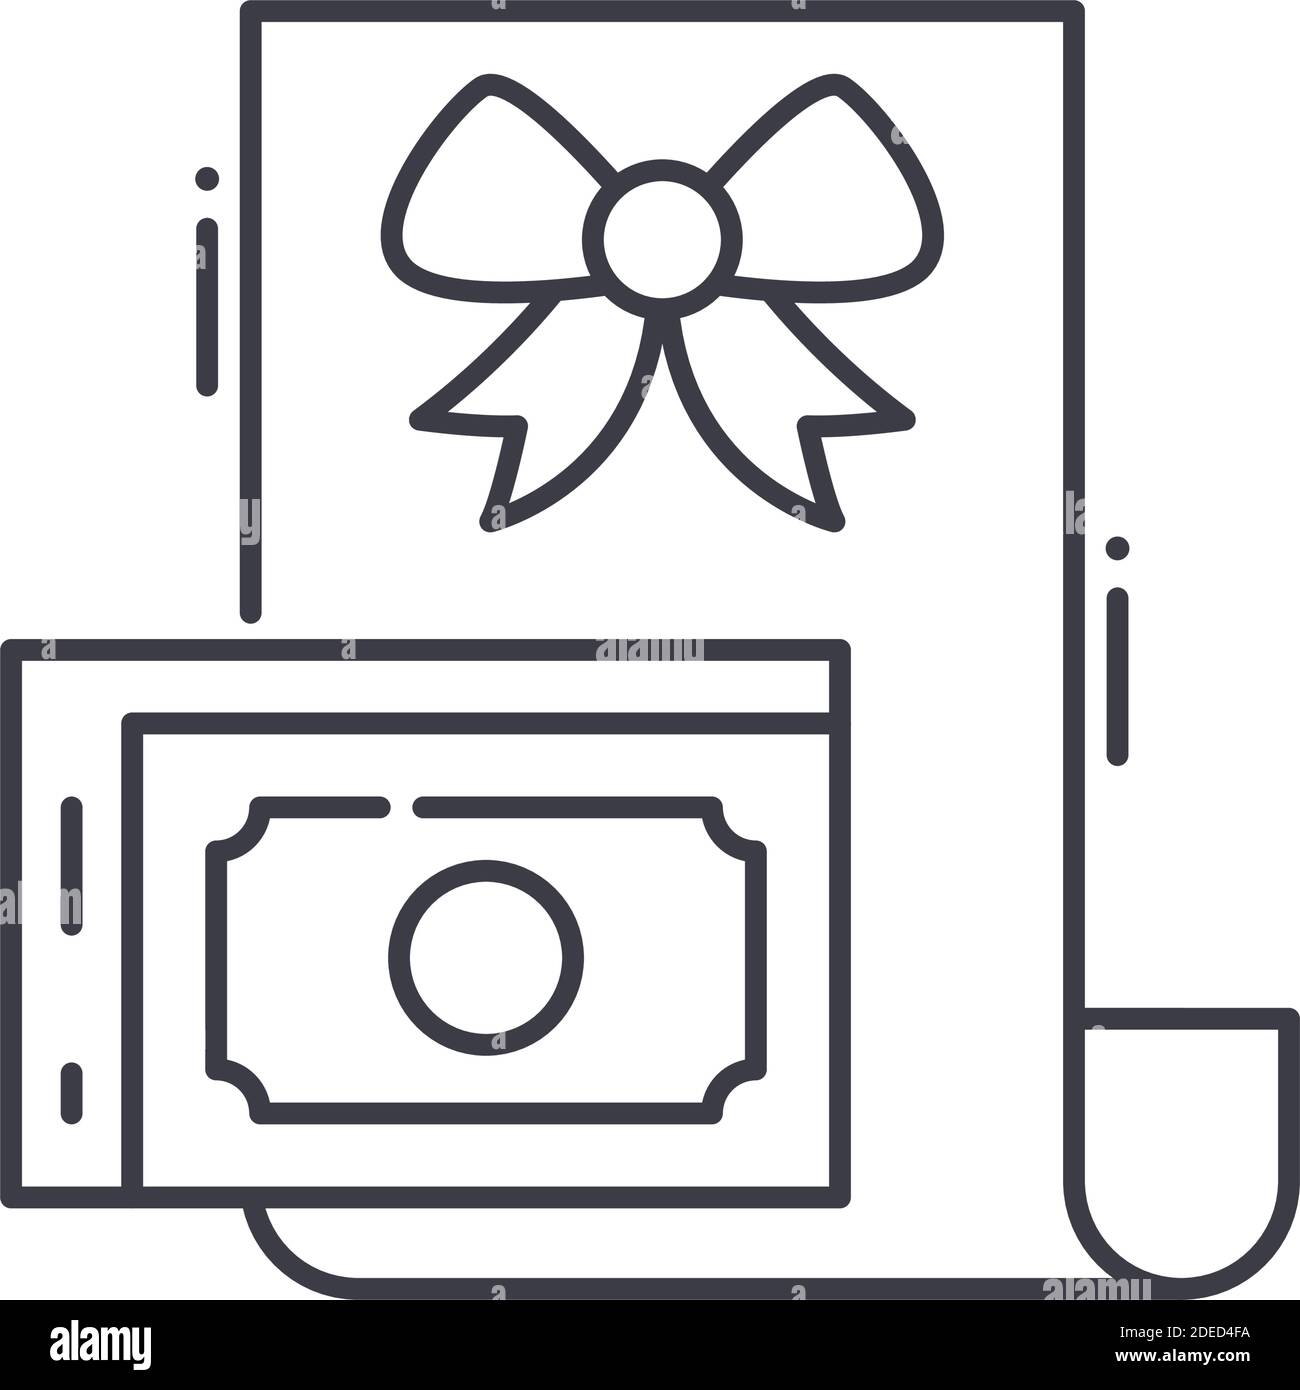 Icona Grant, illustrazione lineare isolata, vettore di linea sottile, segno di disegno web, simbolo di concetto di contorno con tratto modificabile su sfondo bianco. Illustrazione Vettoriale